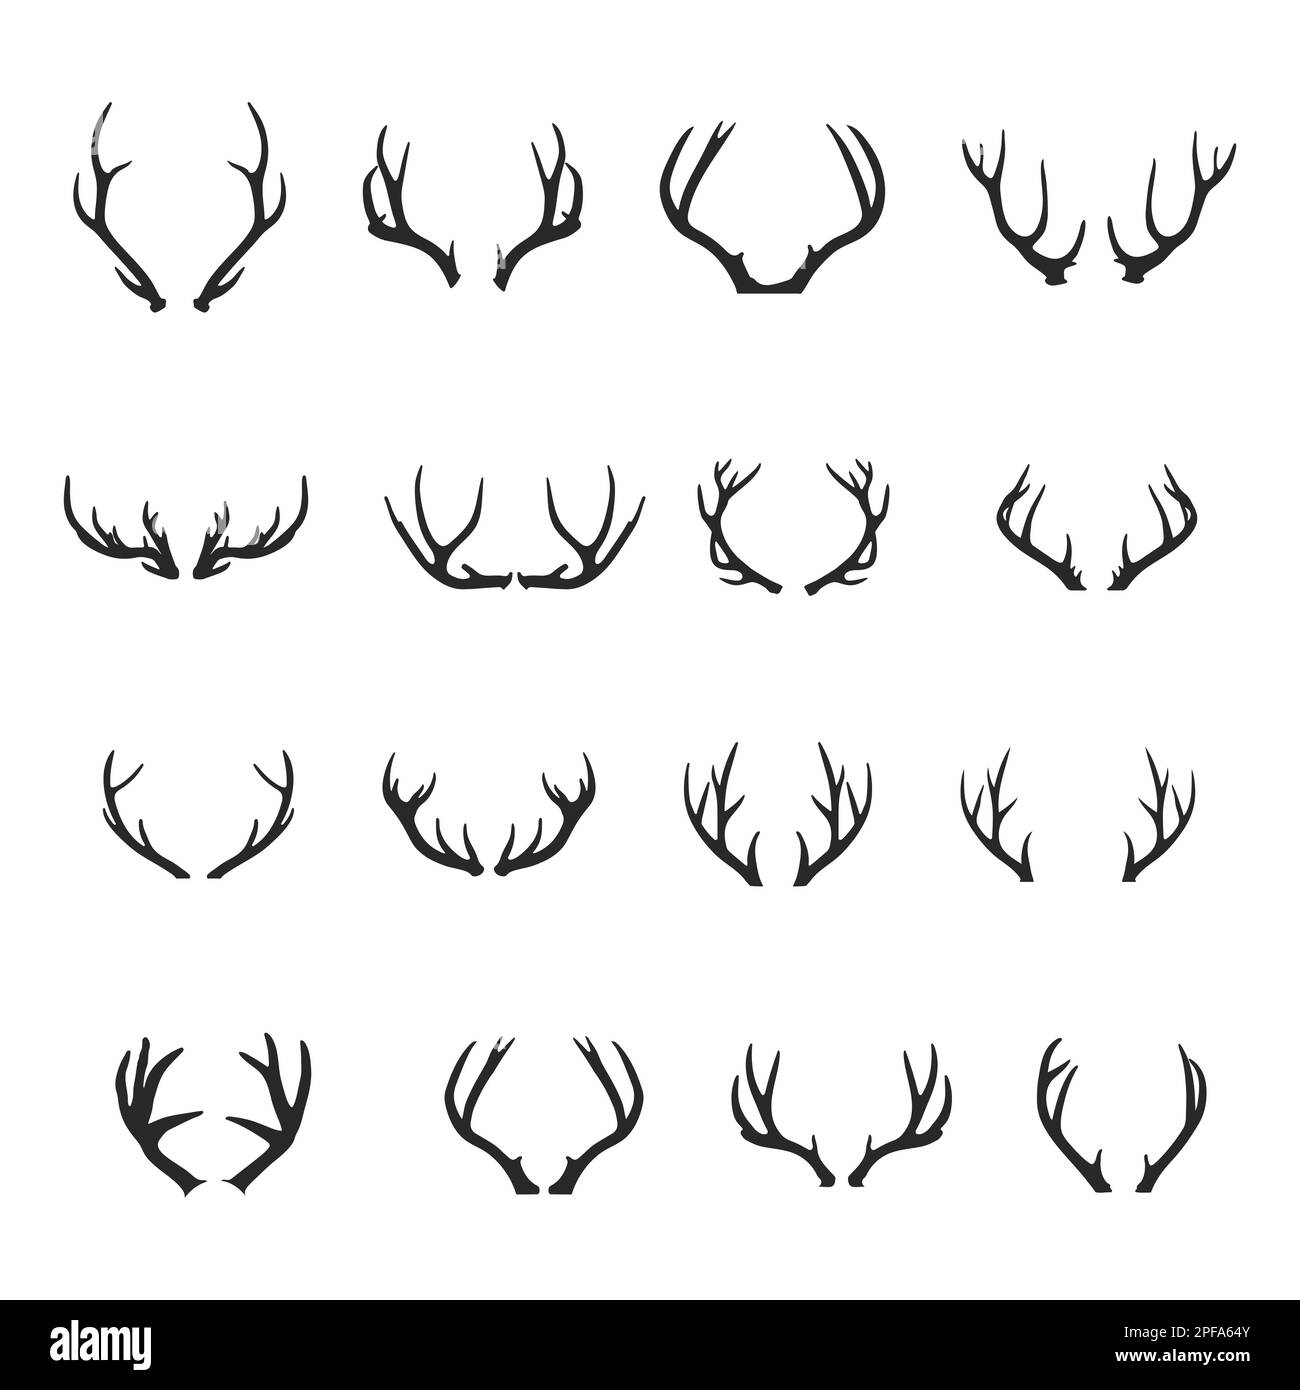 Deer Antlers silhouette set, Deer antlers icon set. Stock Vector